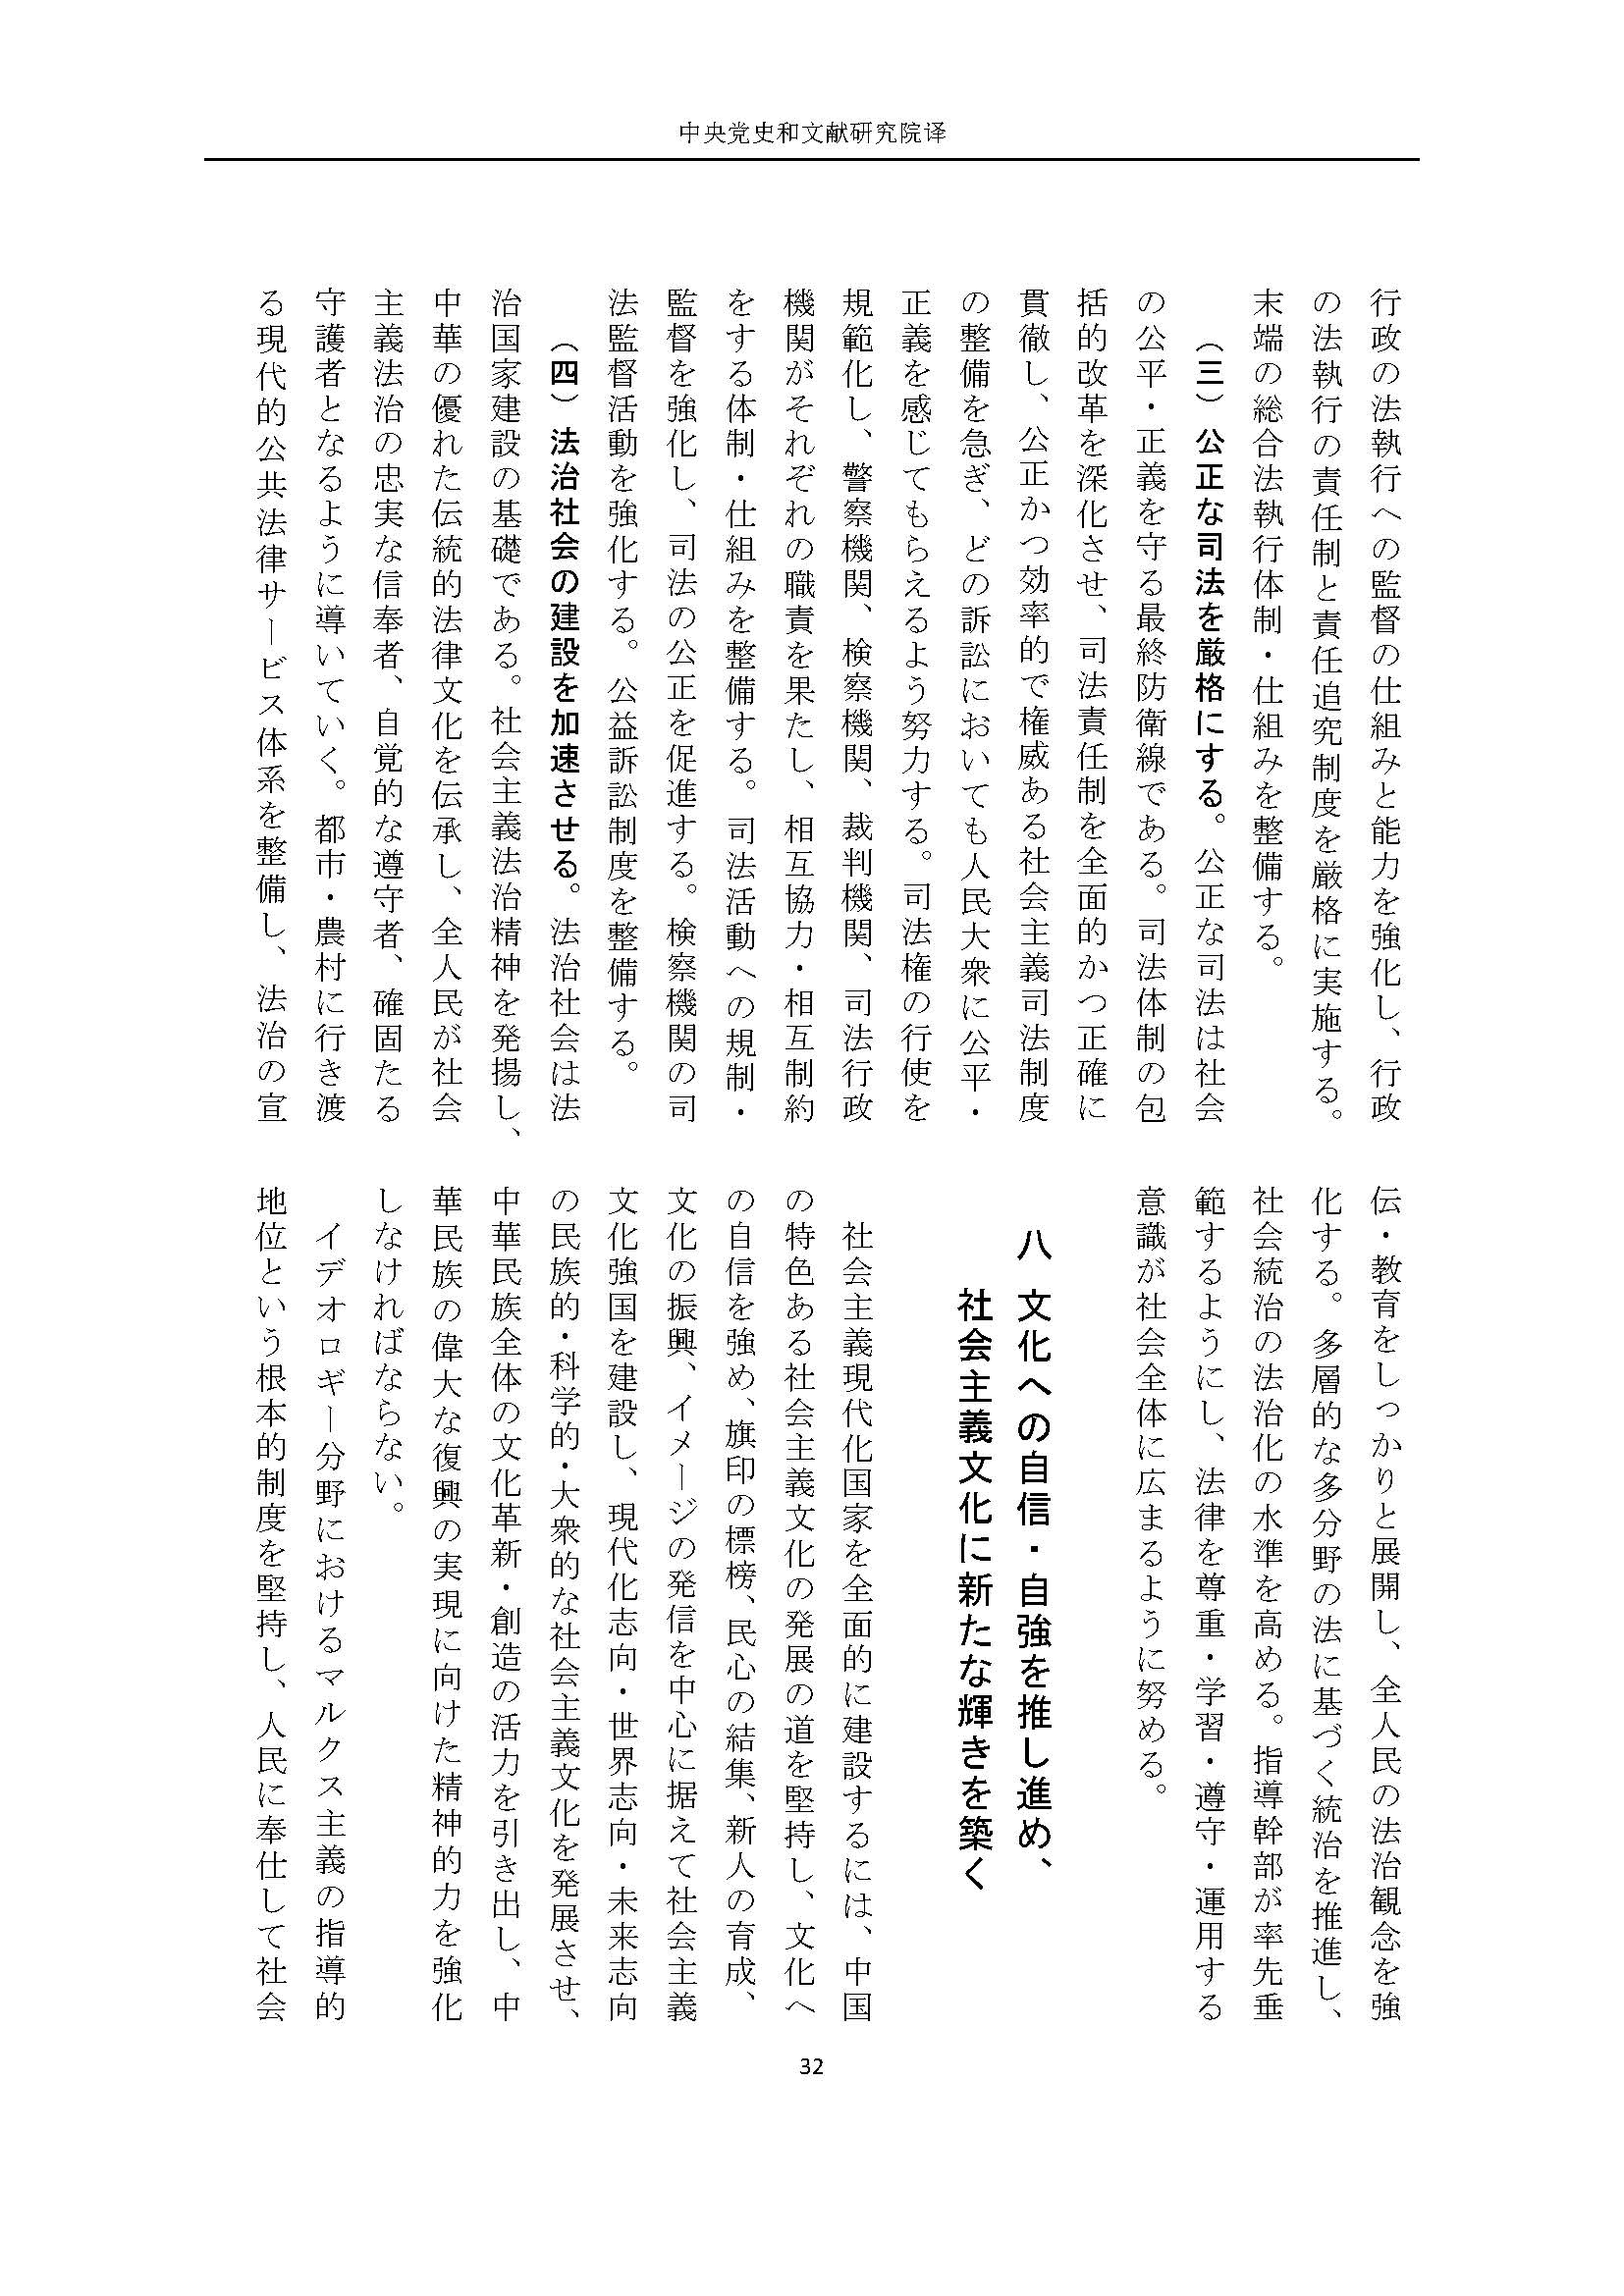 二十大报告（日文全文）_页面_33